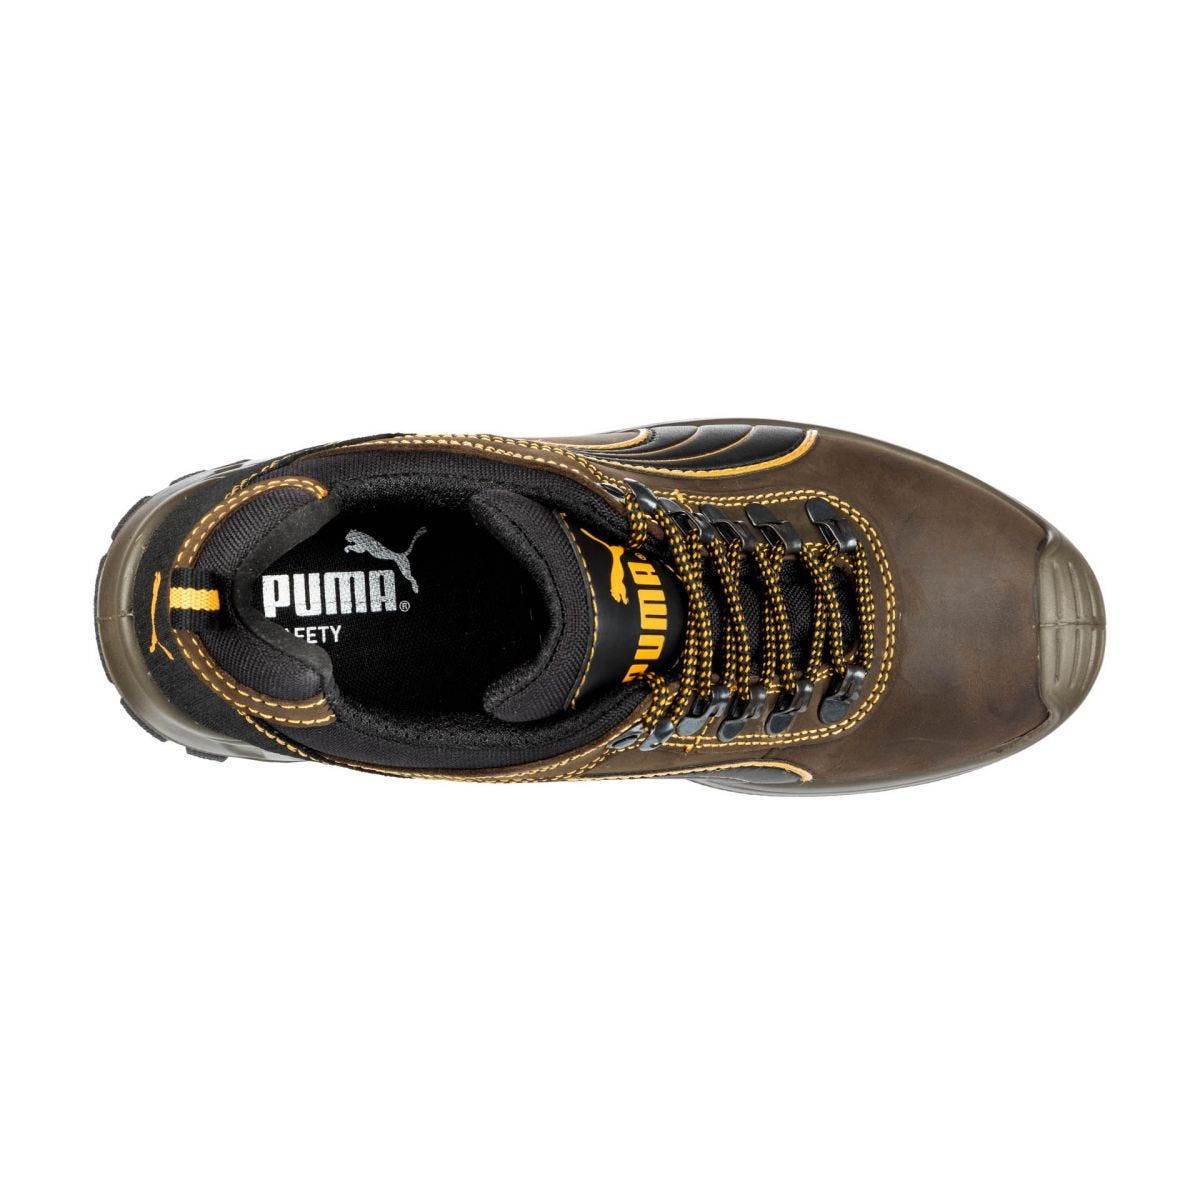 Chaussures de sécurité Sierra Nevada low S3 HRO SRC - Puma - Taille 40 2